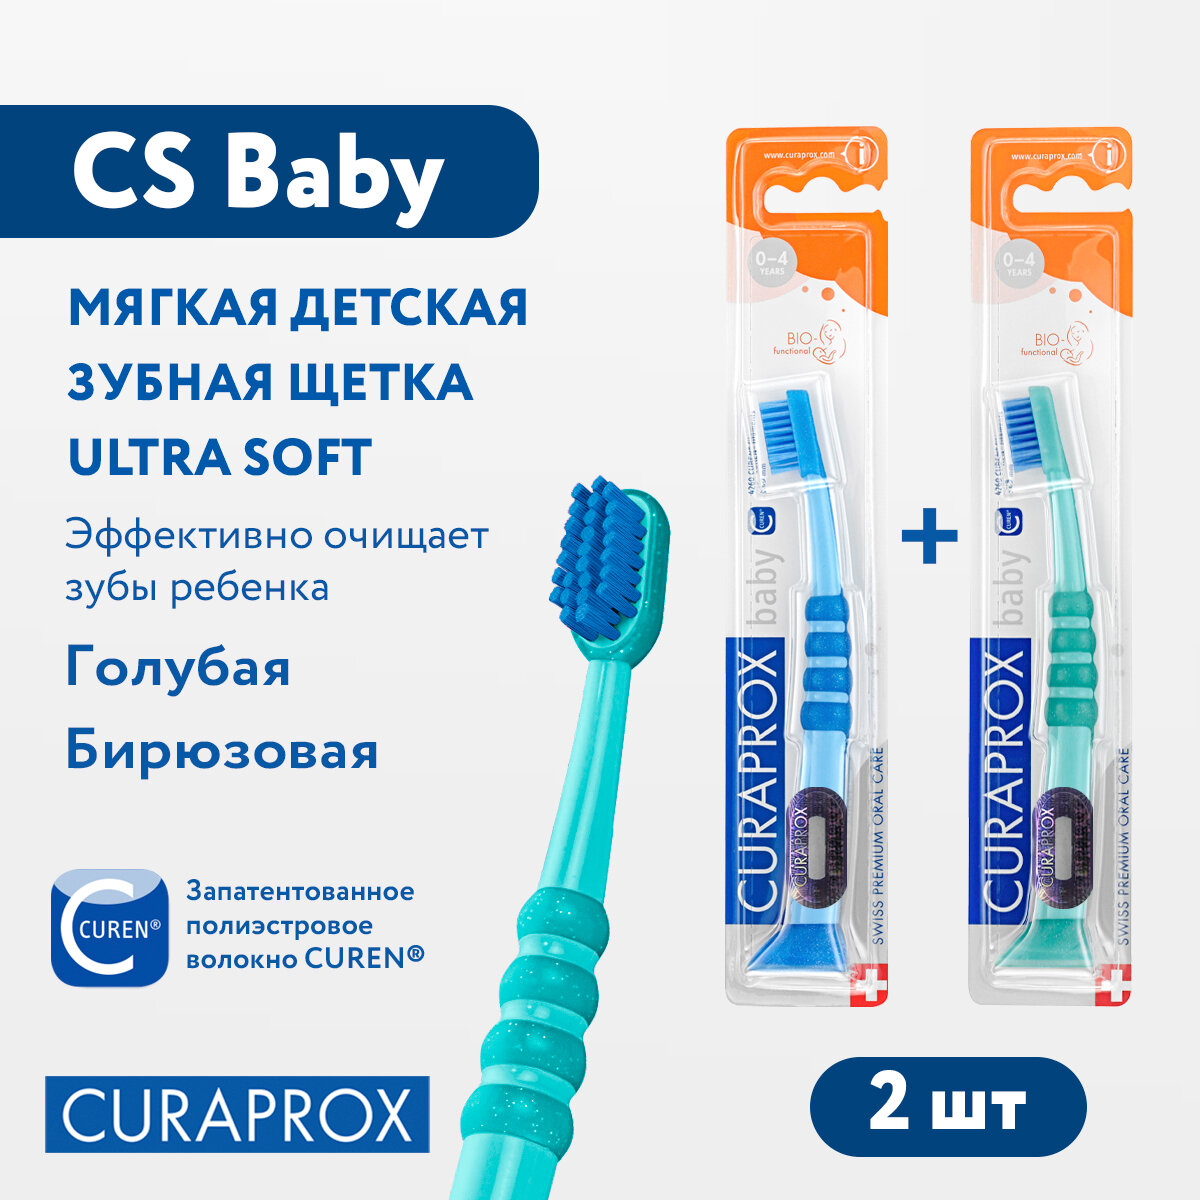 Набор детских зубных щеток Curaprox (2 шт.) c гуммированной ручкой серия Baby (голубая и бирюзовая)